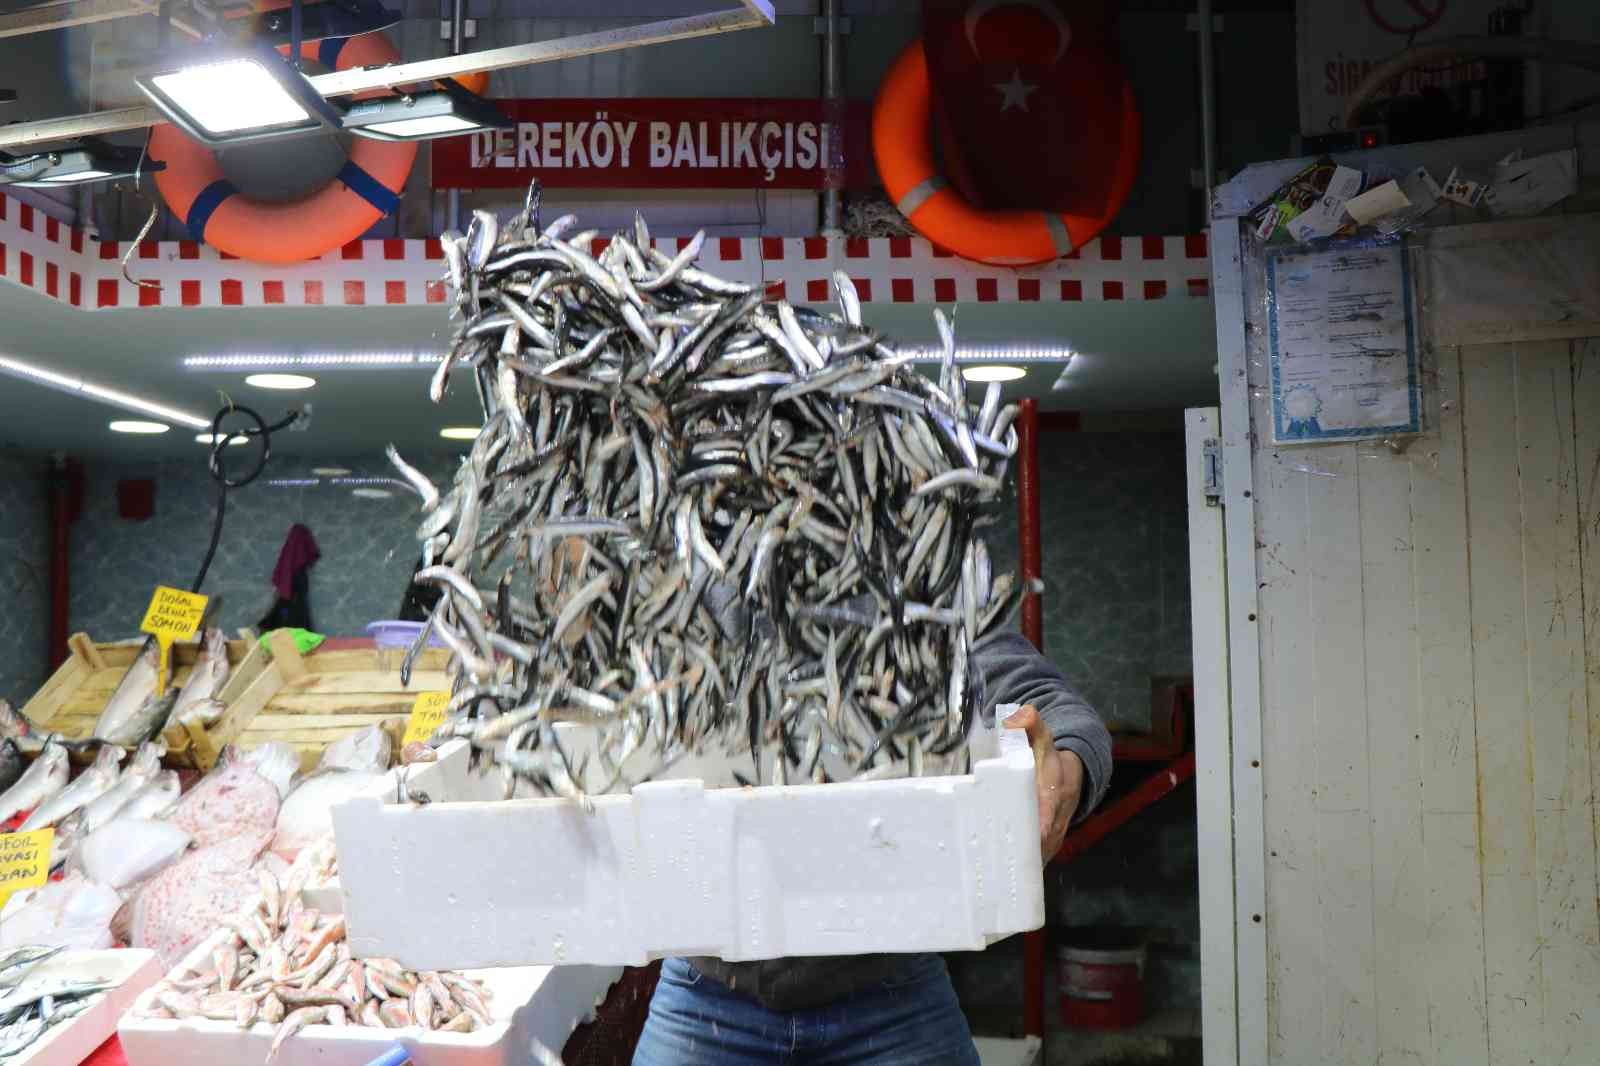 Balıkçılar şaşkın: Ucuz balığa ilgi yok
